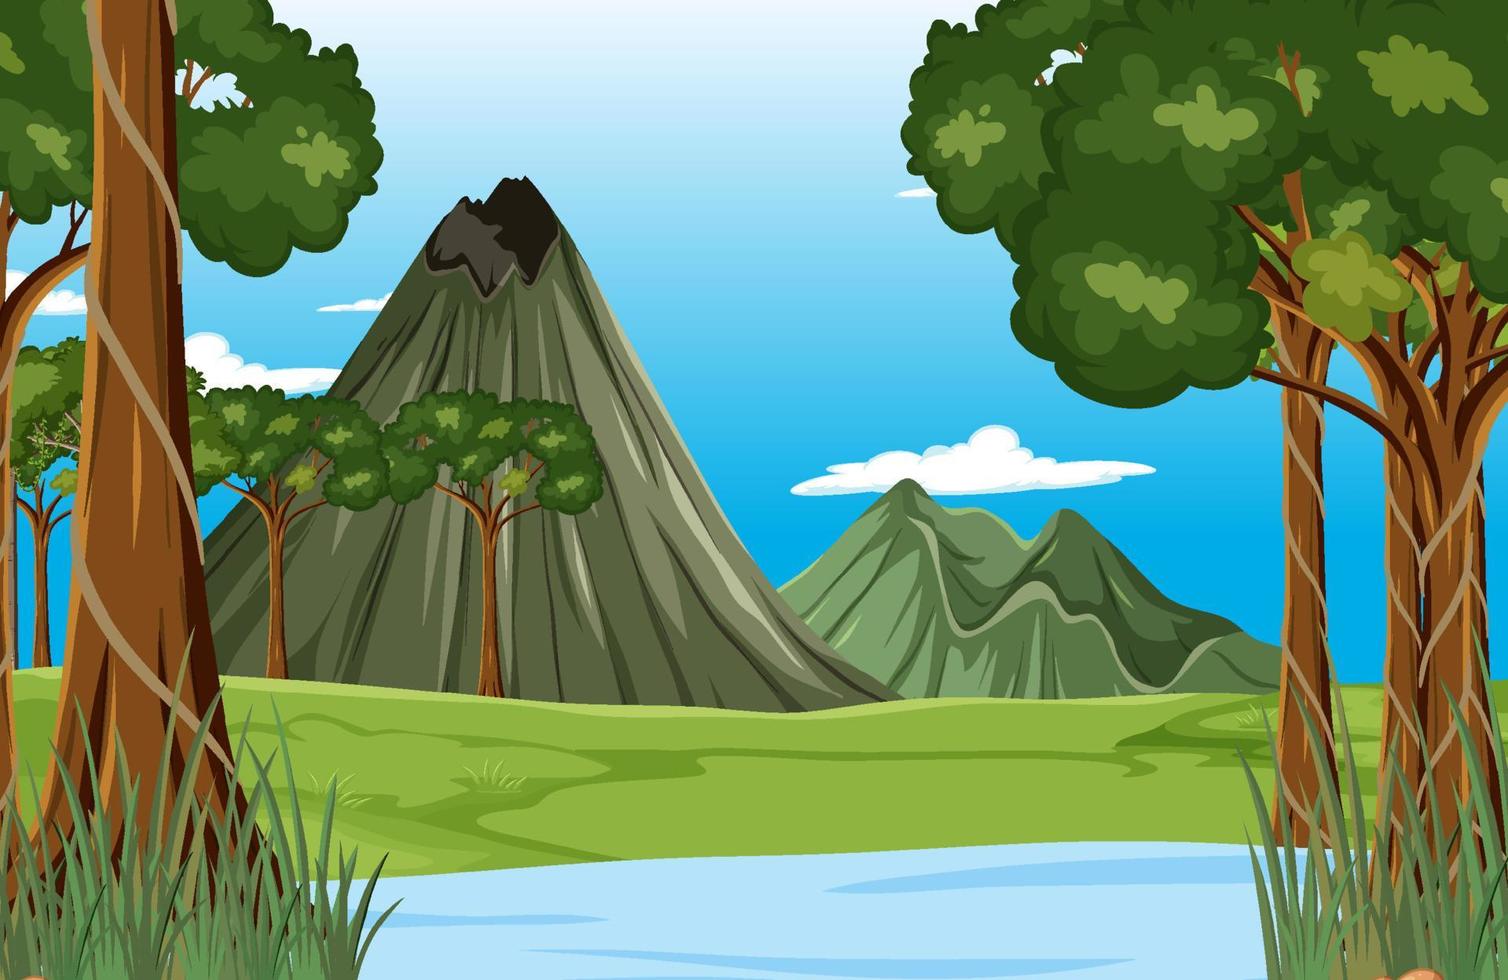 Prehistoric forest scene background vector